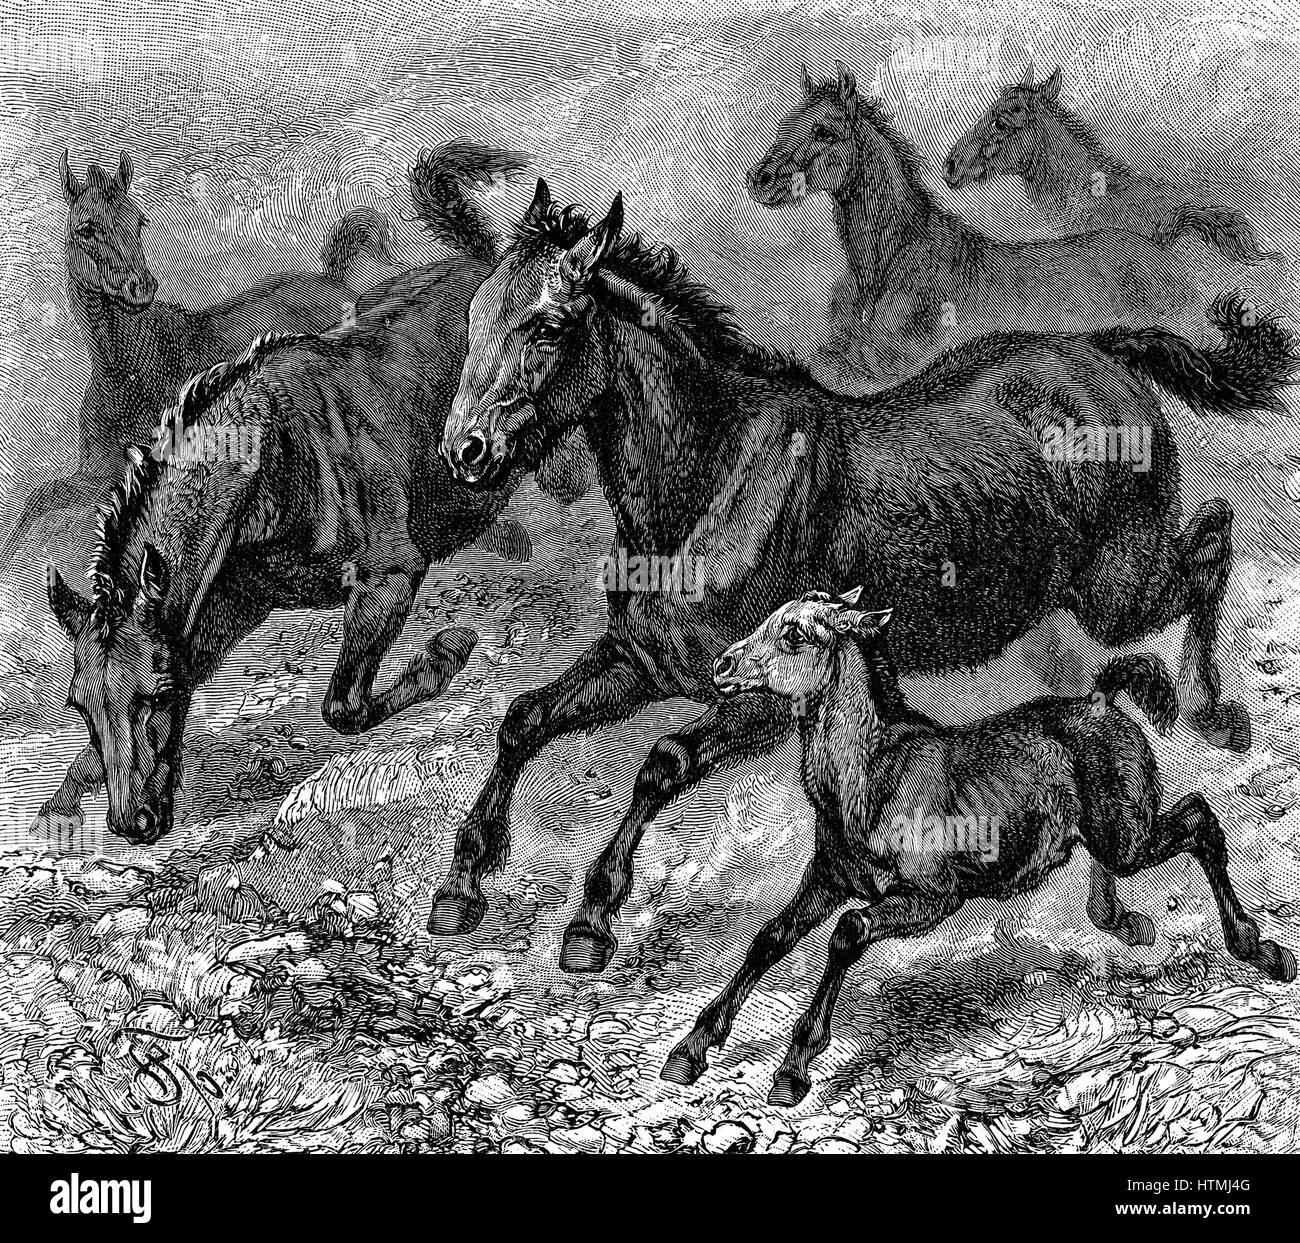 Manada de Tarpan, el caballo salvaje prehistórico que se extinguió a fines del 1800. Creación genética moderna hecha en 1930 utilizando razas de pony con Tarpan ascendencia. Grabado en madera de 1893. Foto de stock